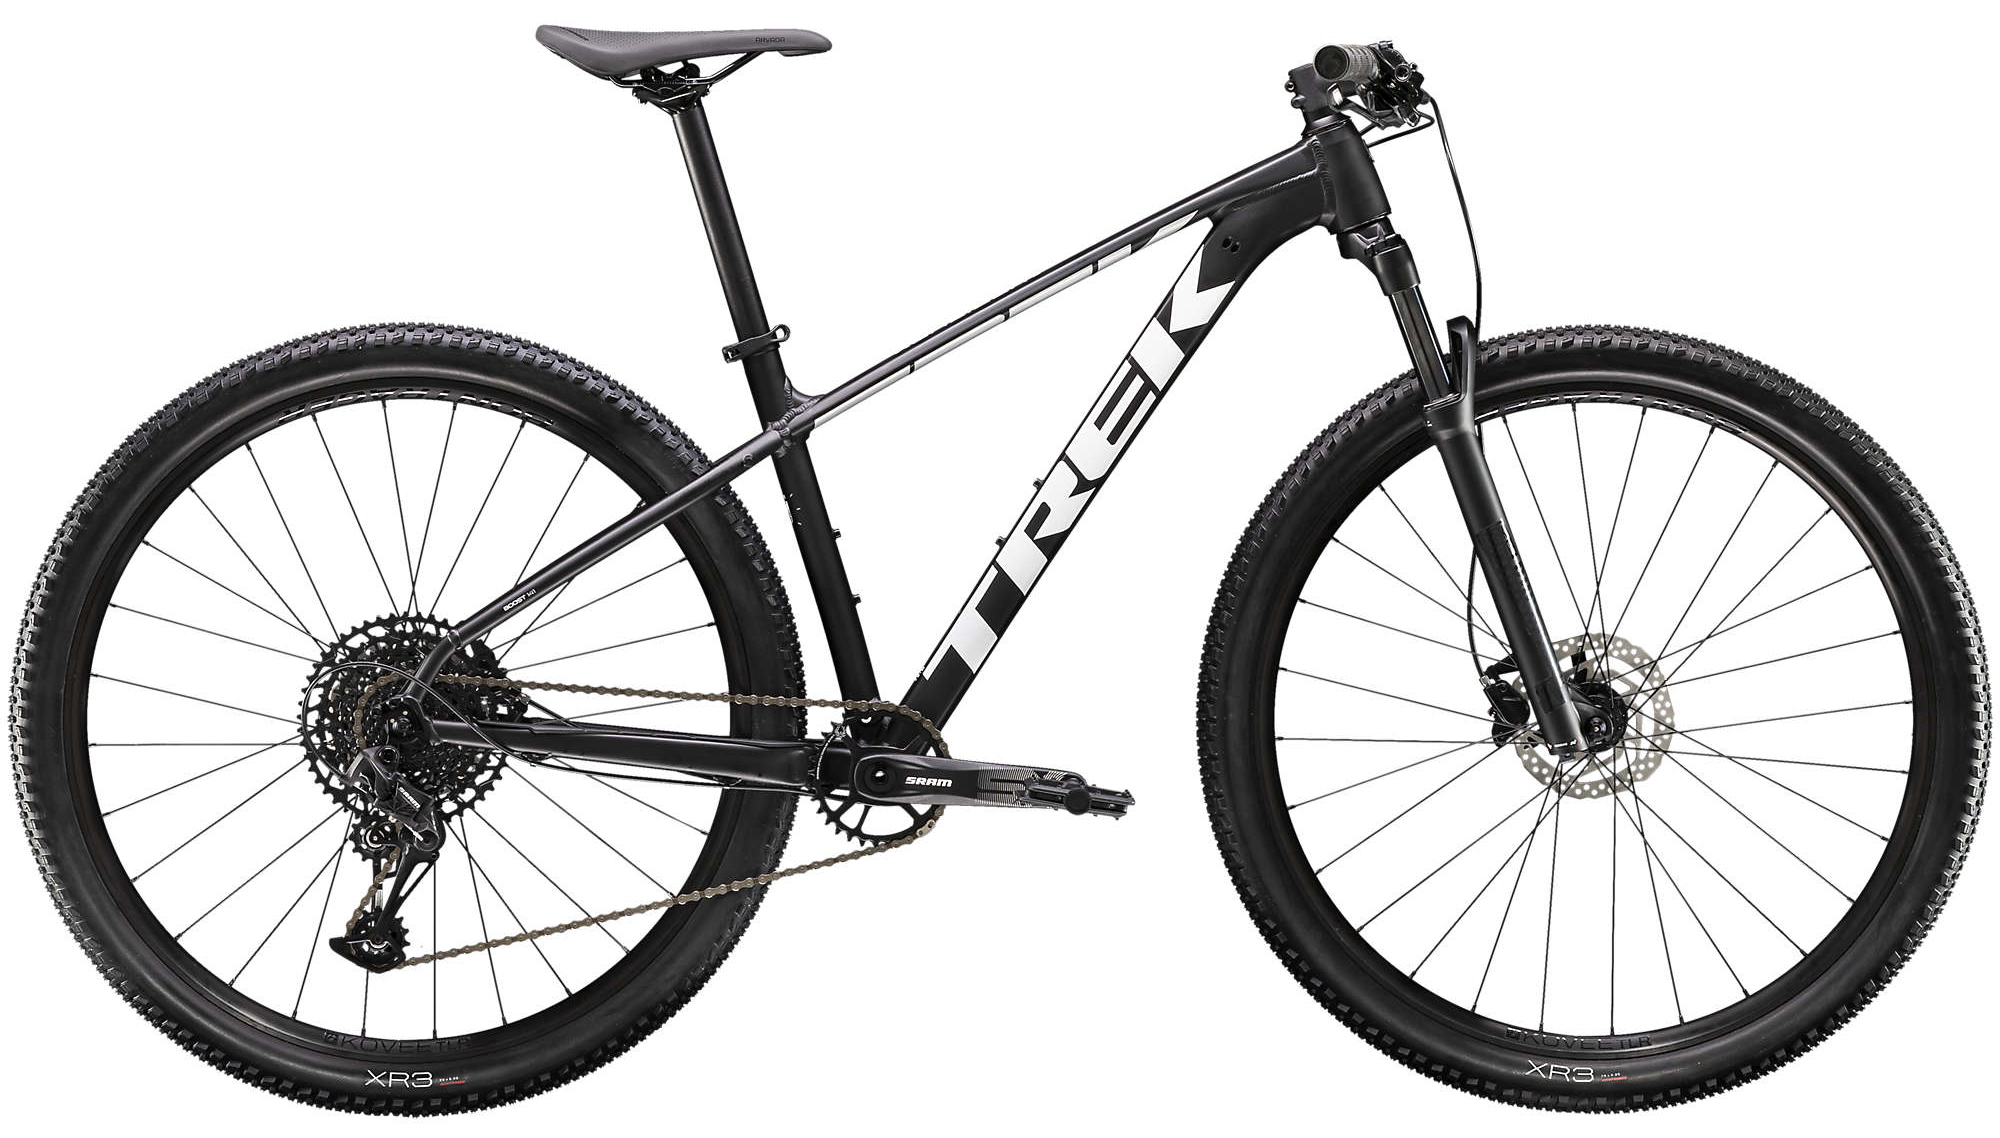  Отзывы о Горном велосипеде Trek X-Caliber 8 29 2020